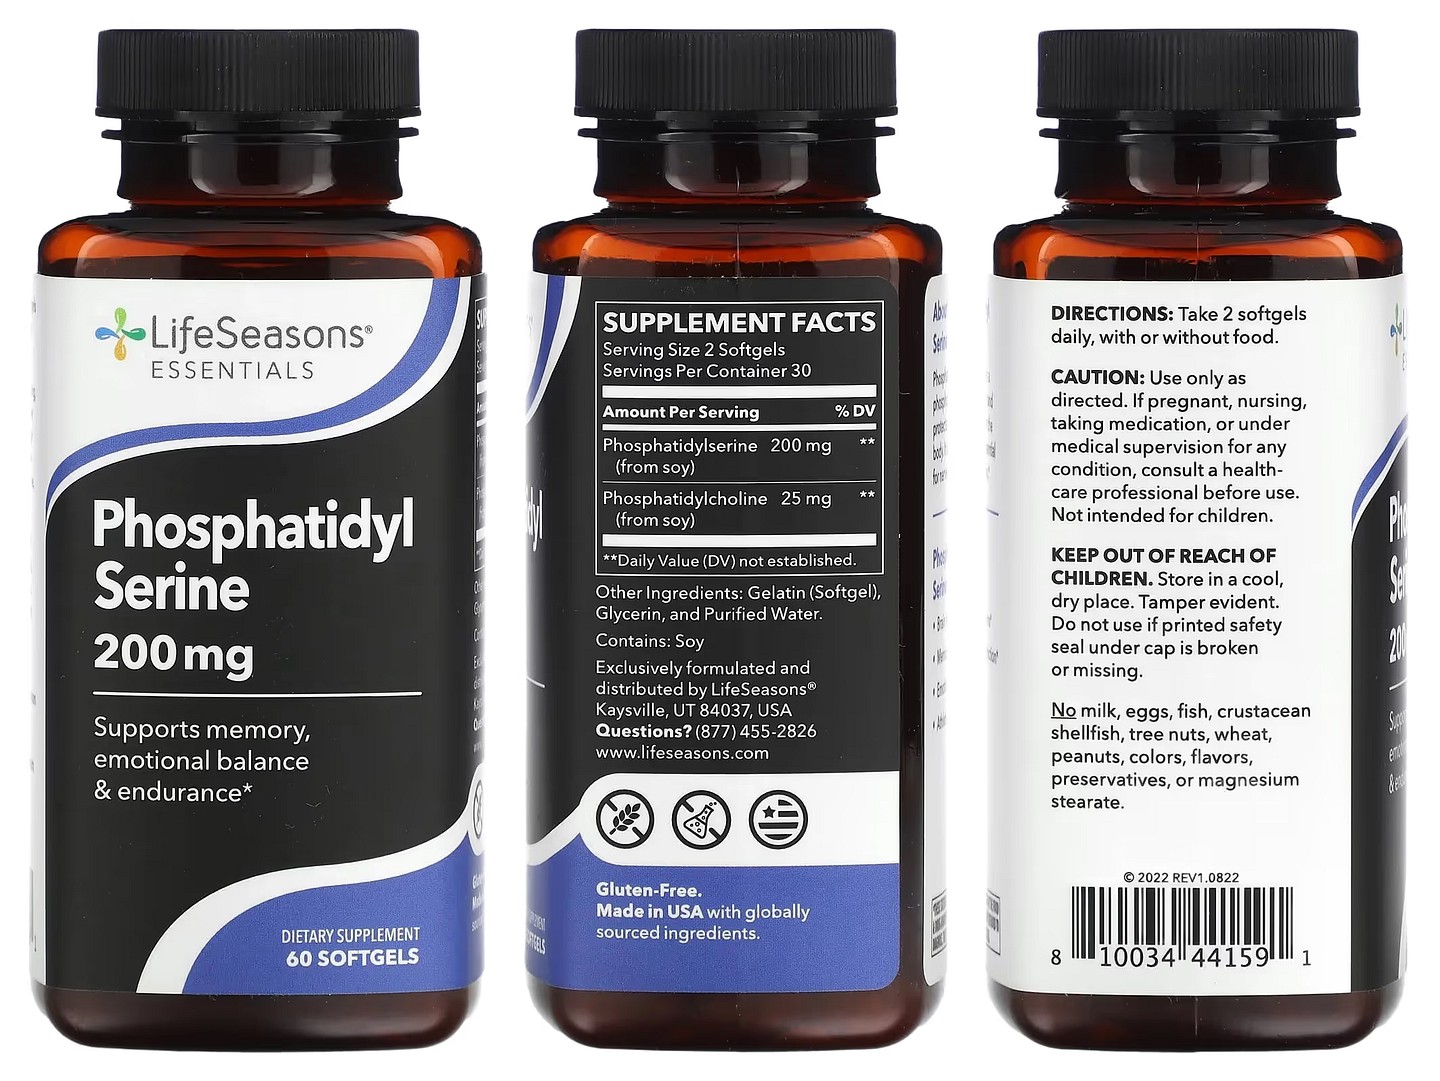 LifeSeasons, Phosphatidyl Serine packaging